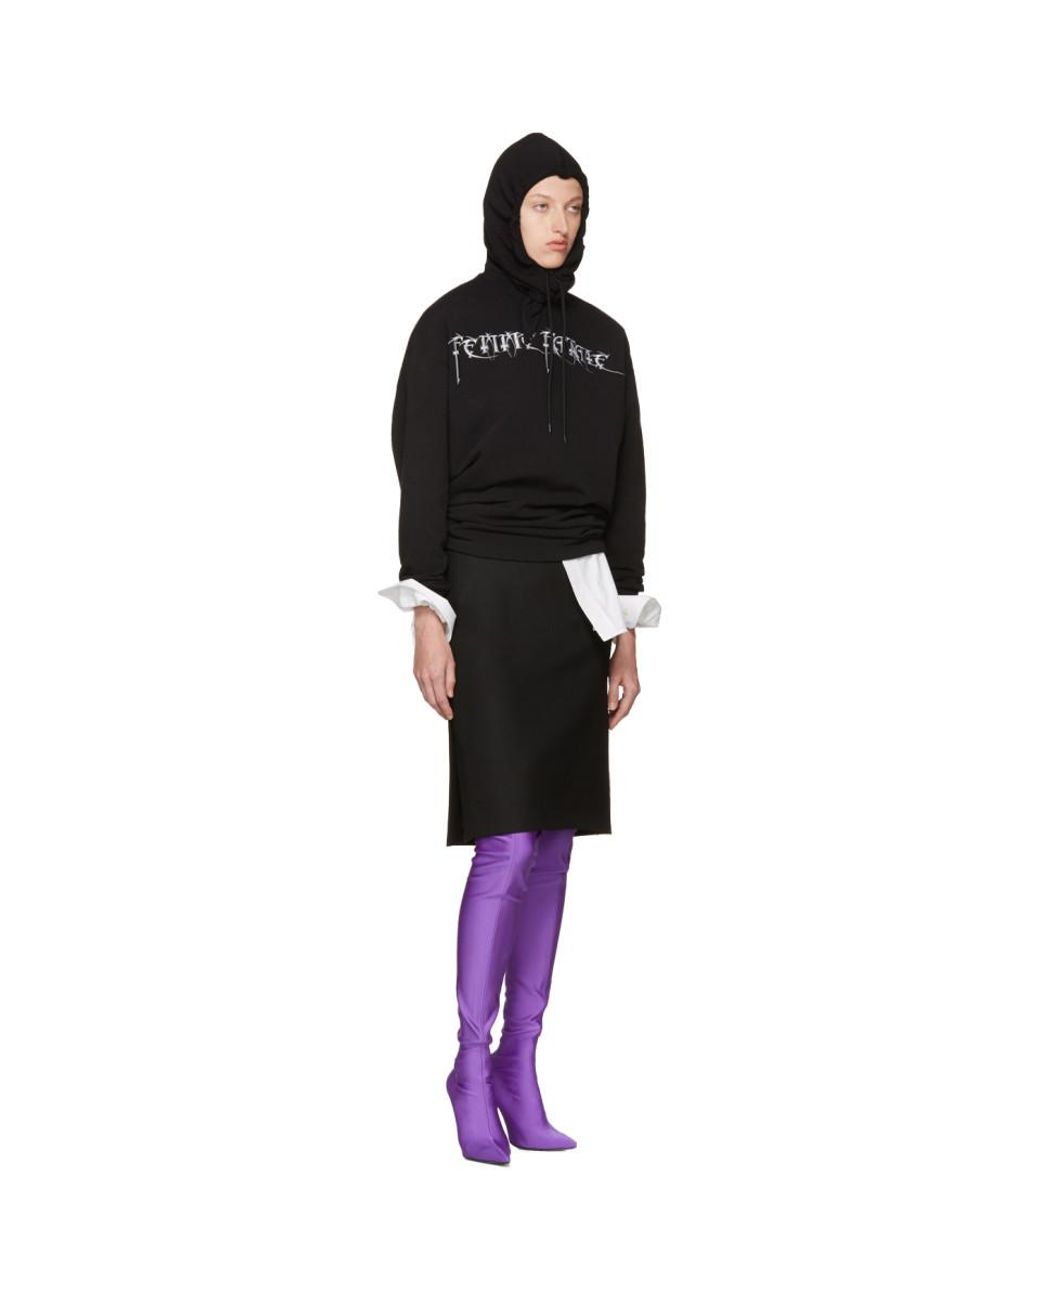 Balenciaga Black 'femme Fatale' Headscarf Hoodie | Lyst